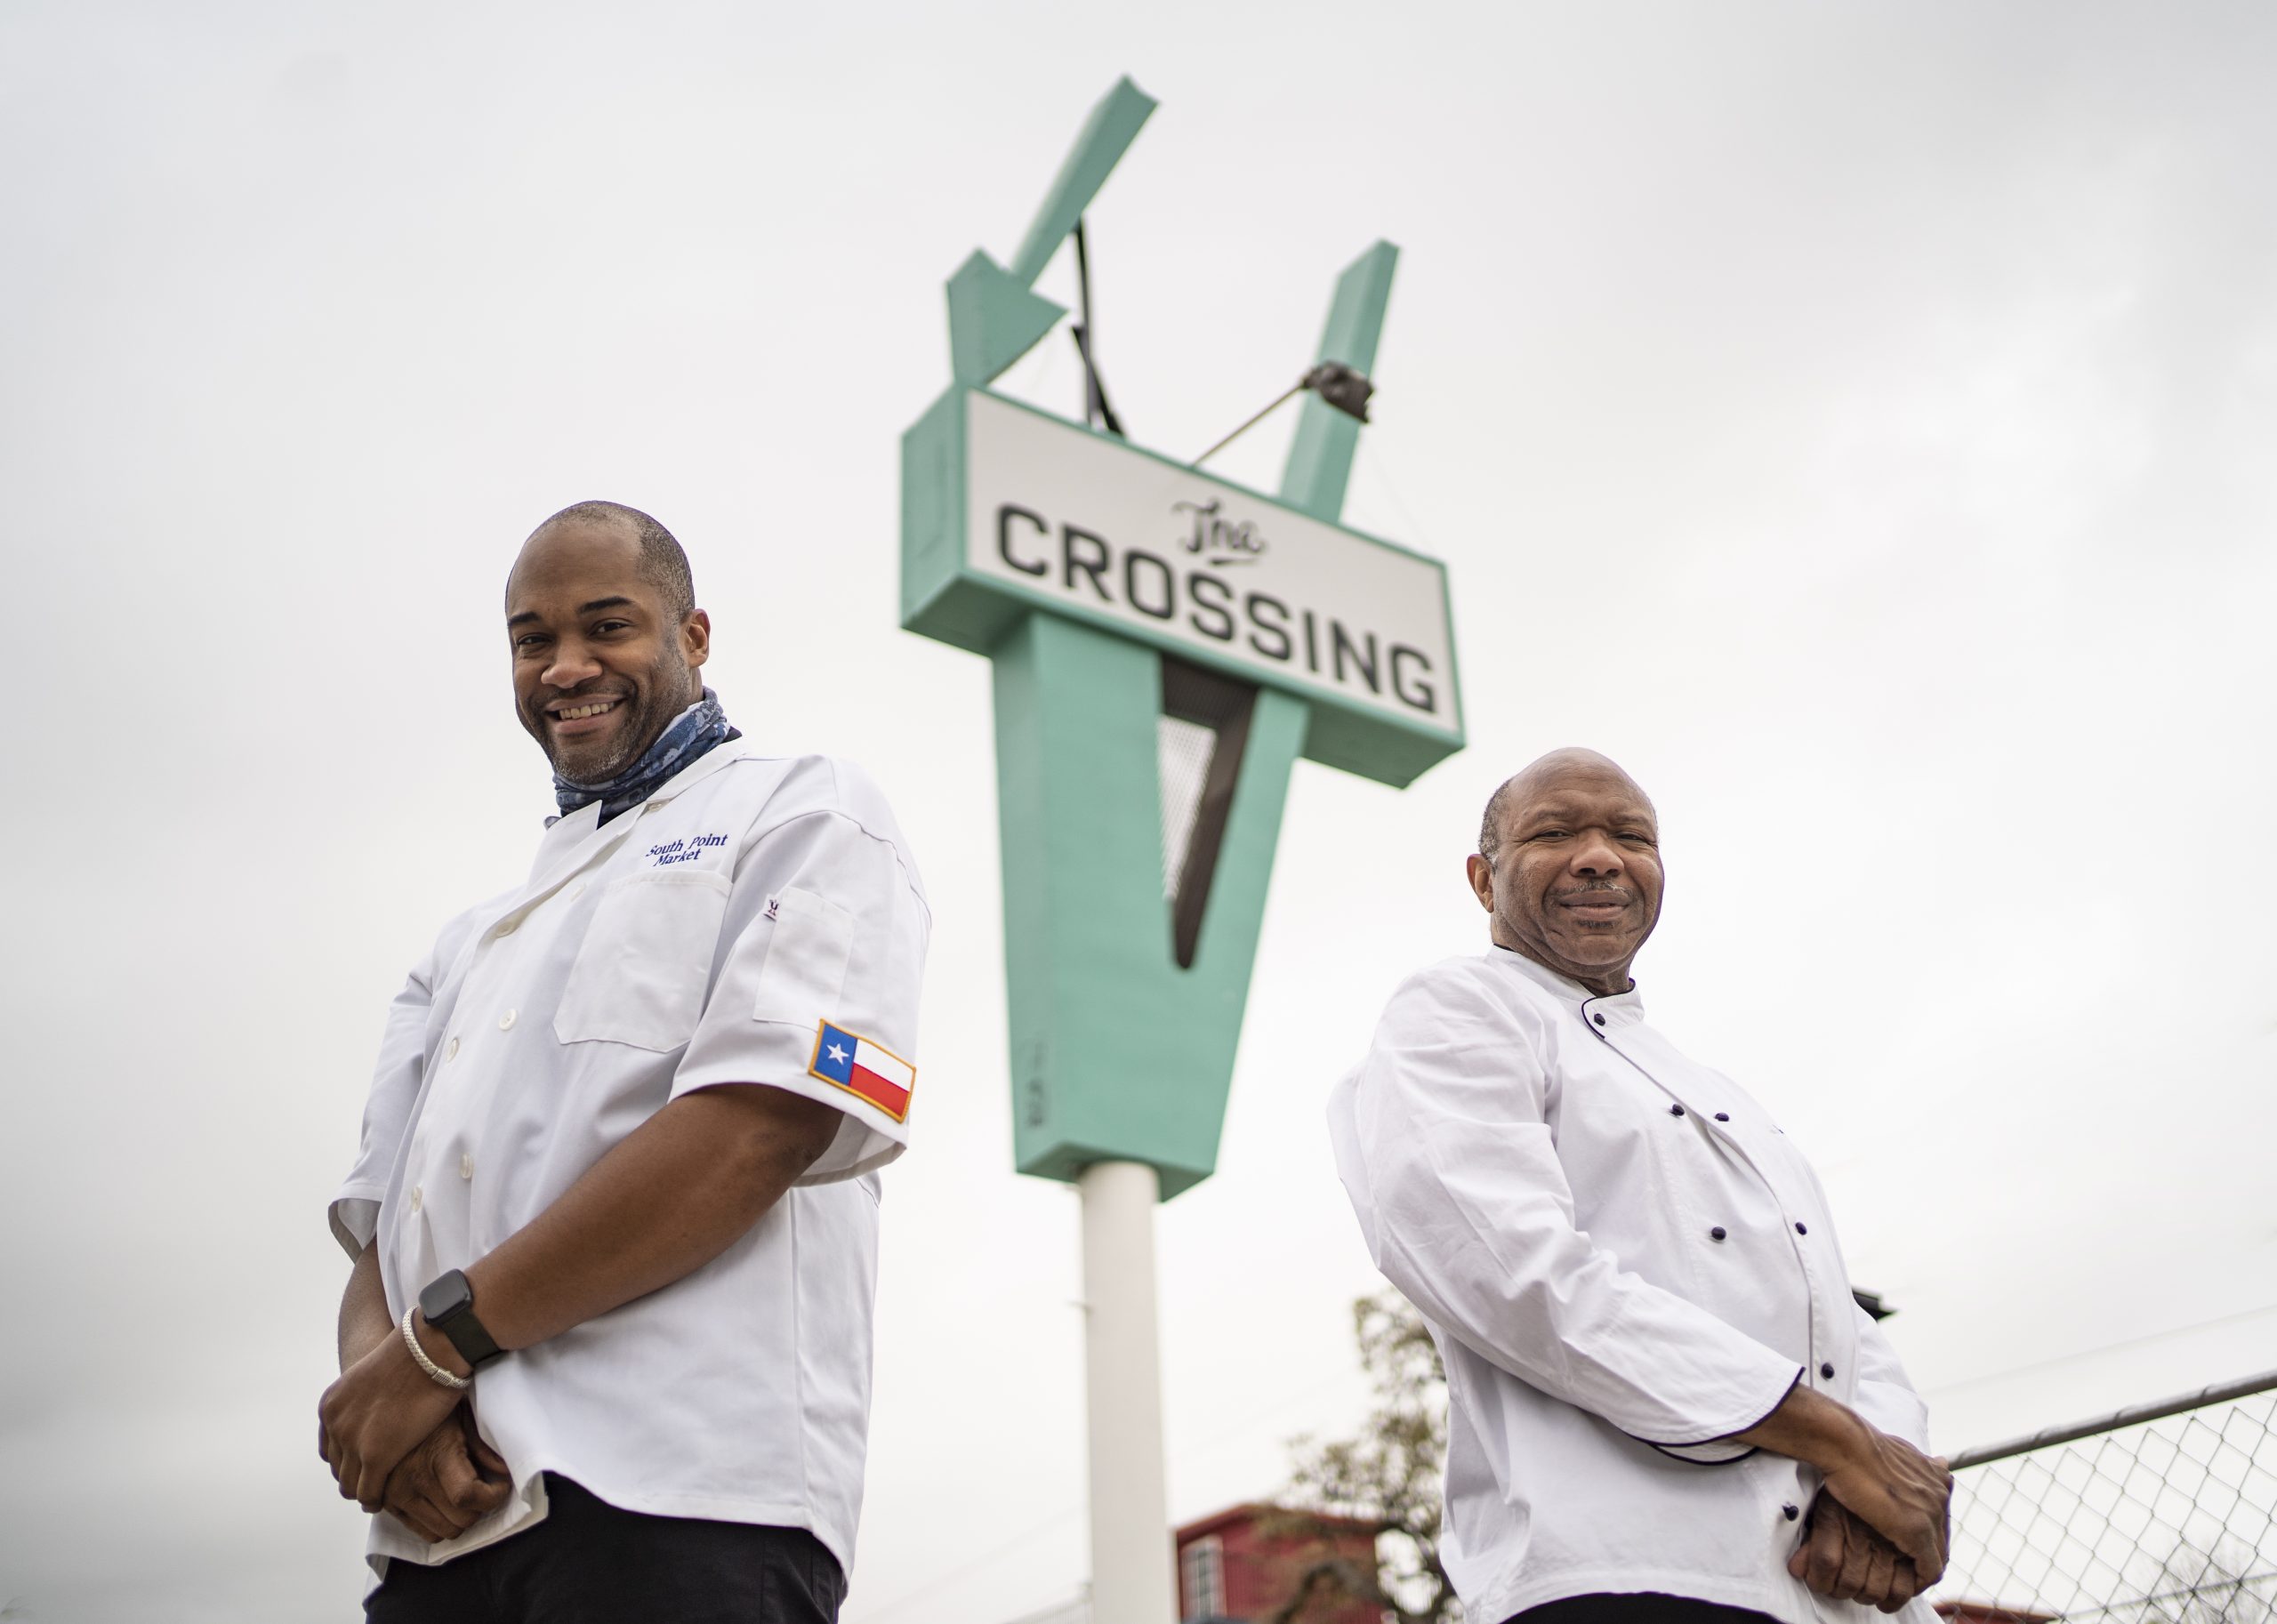 La Iglesia Bautista Cornerstone esta abriendo una tienda de comestibles para abordar la inseguridad alimentaria en South Dallas